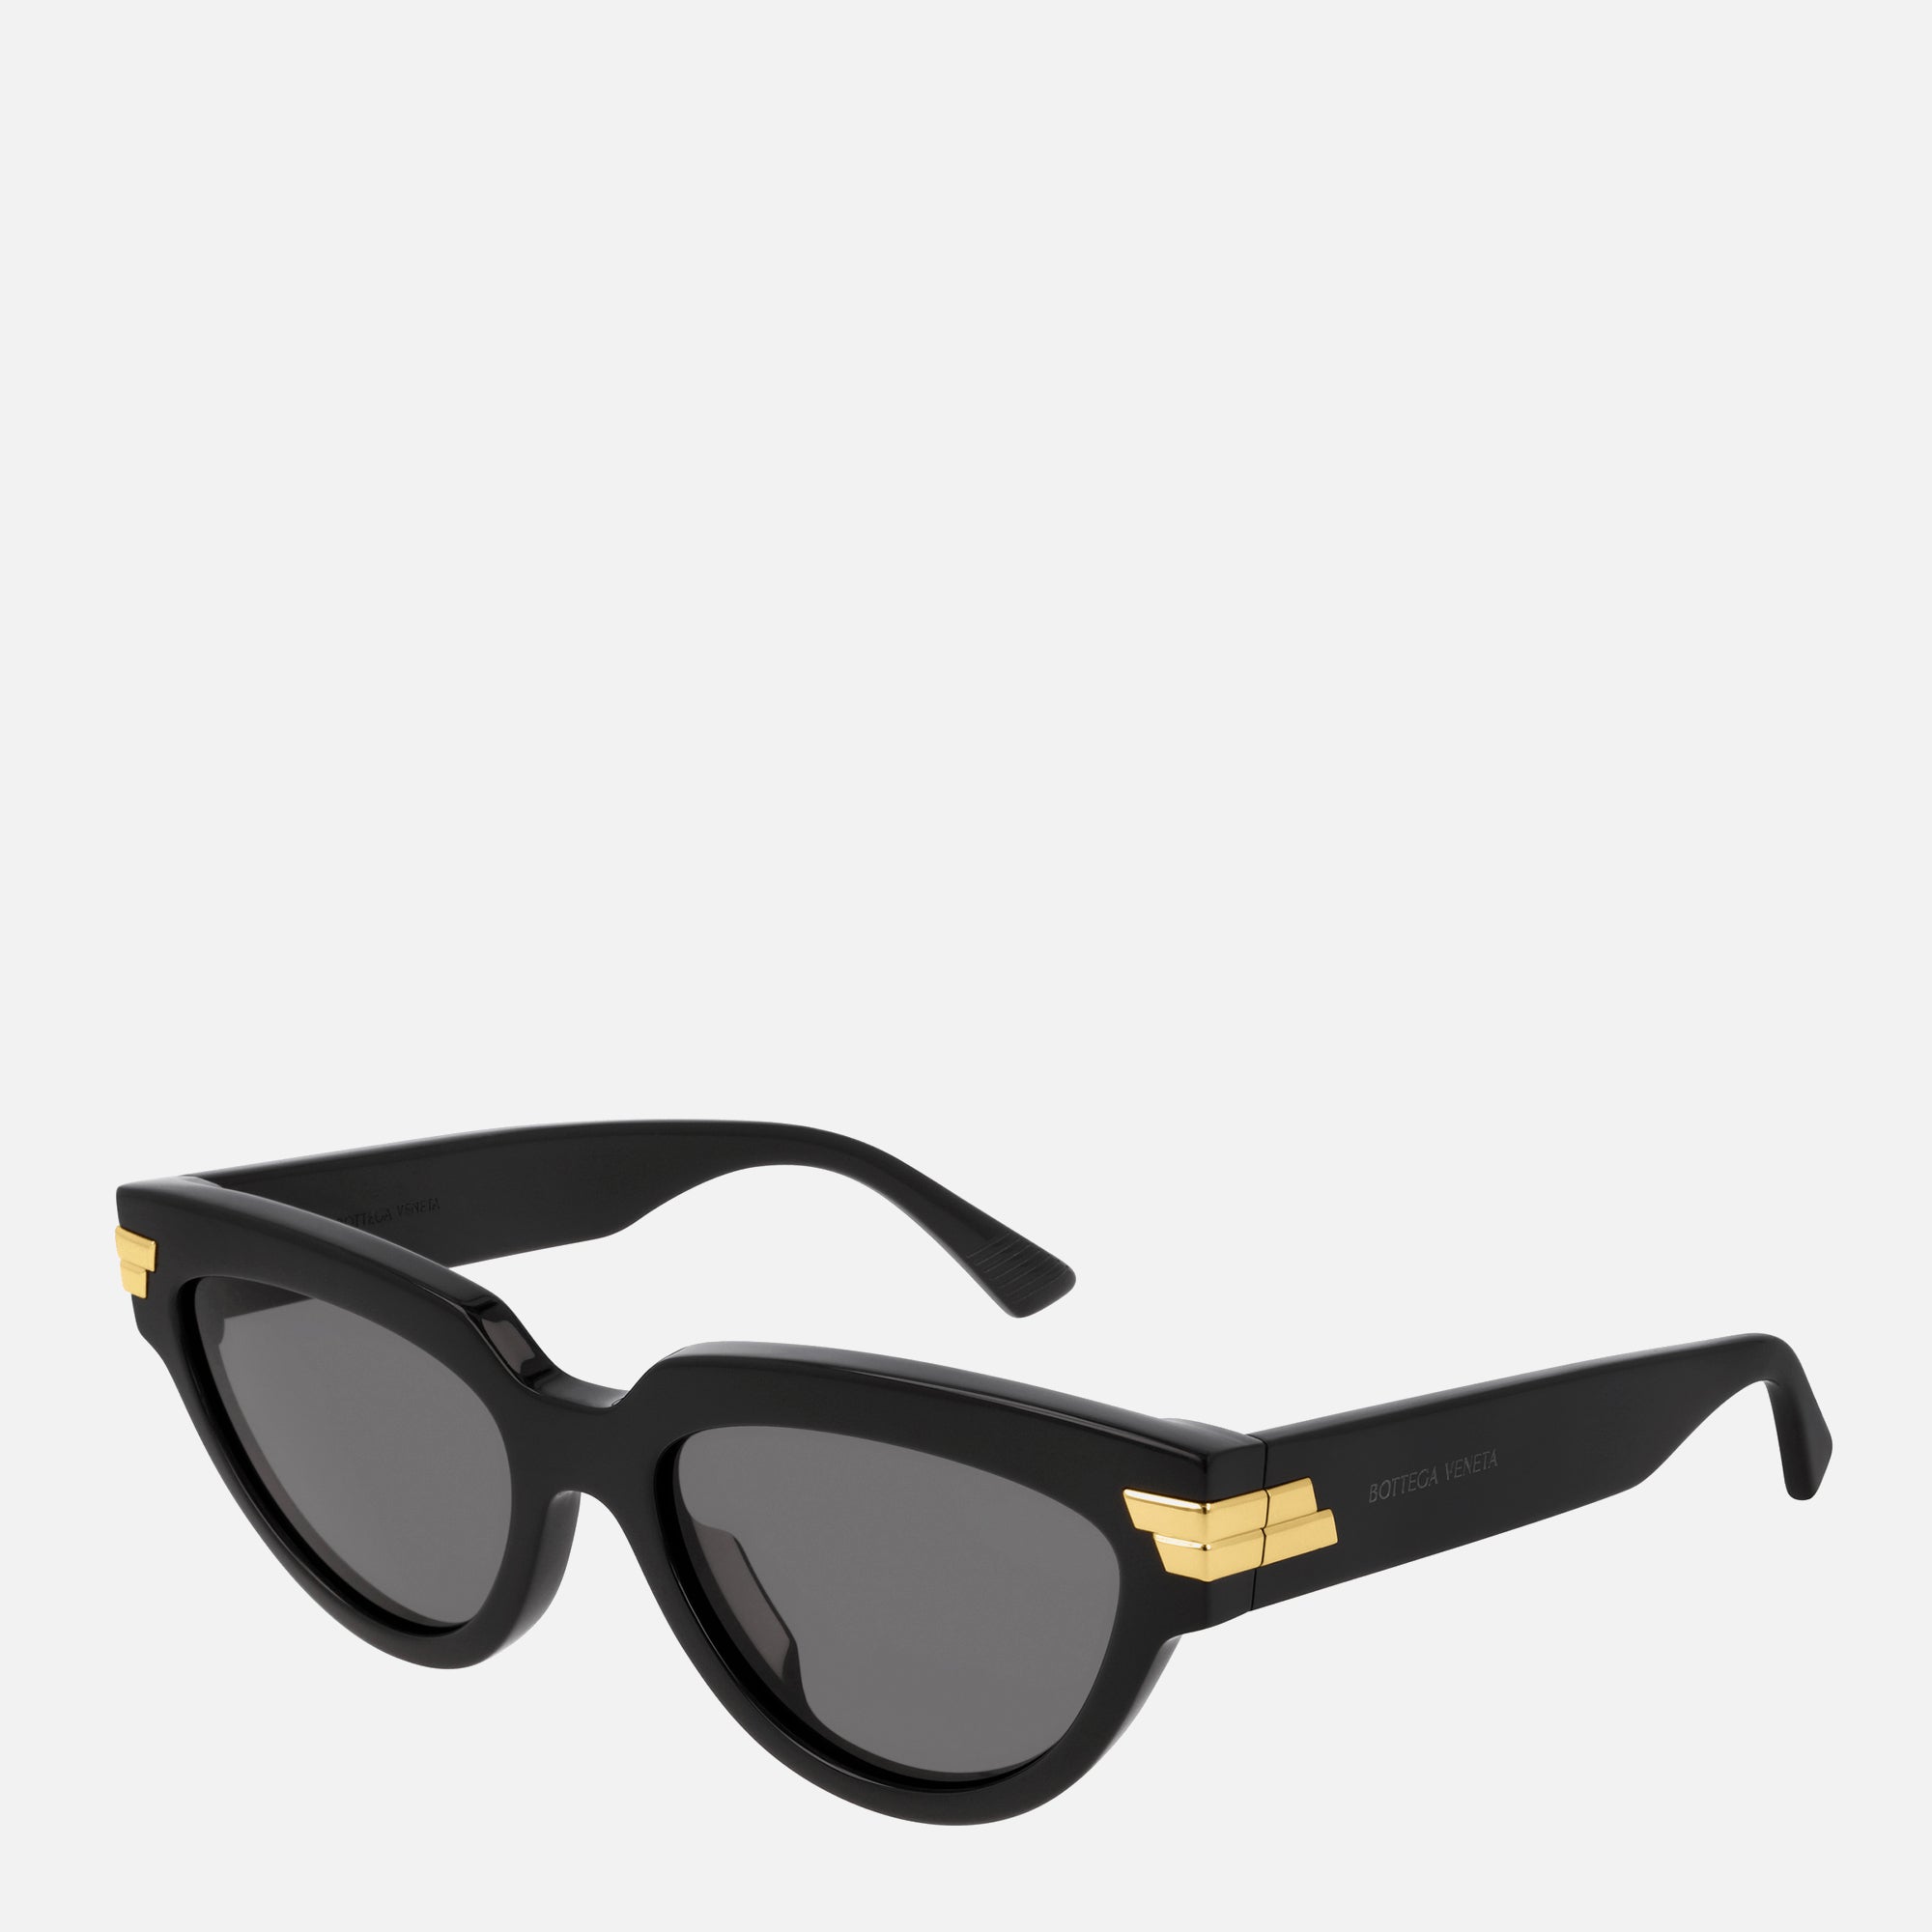 Bottega Veneta Women's Cateye Acetate Sunglasses - Black - Image 1